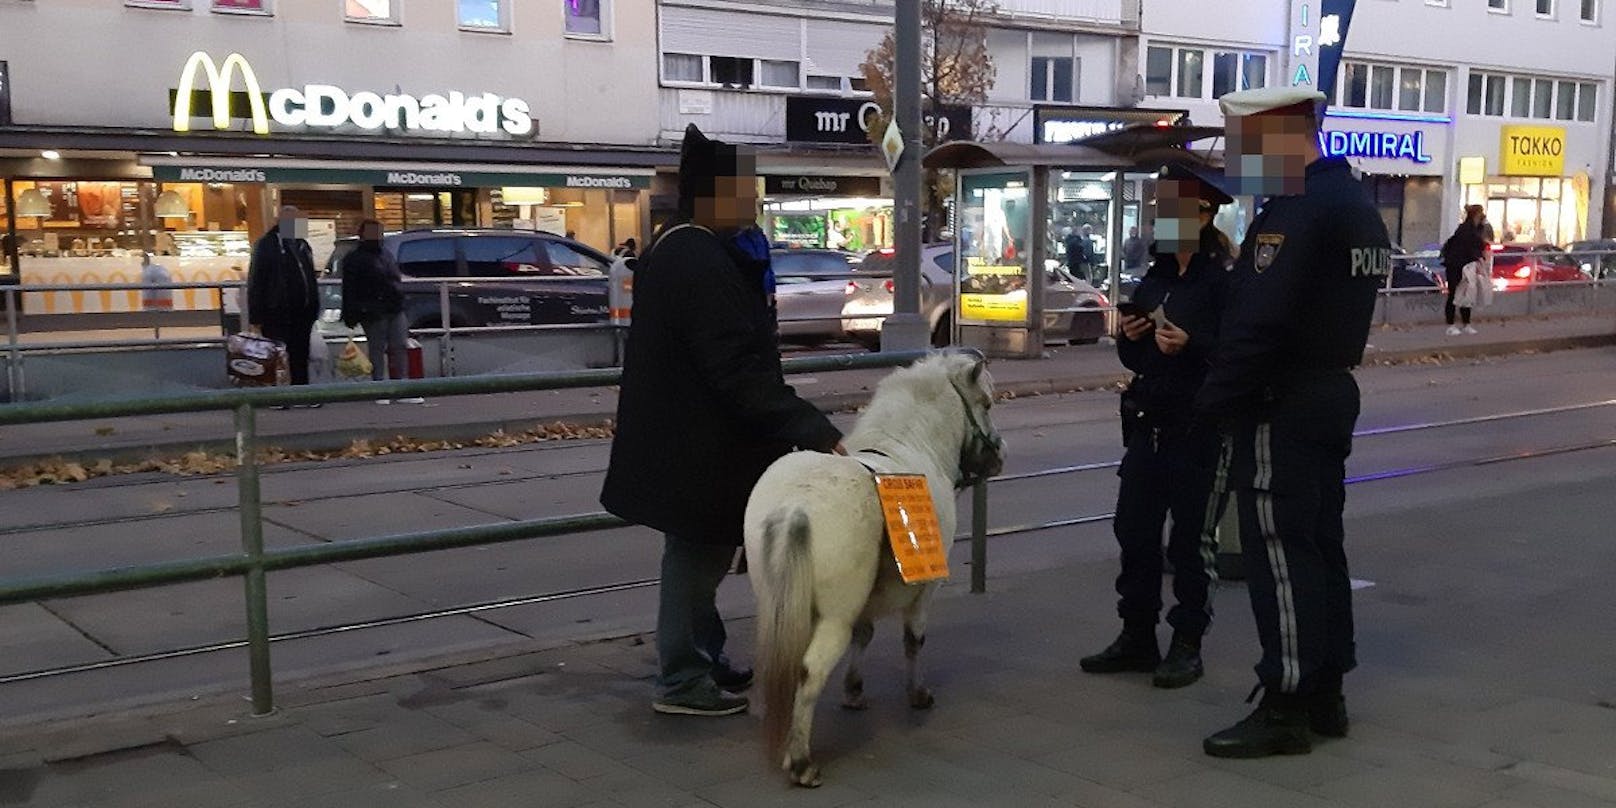 Die Polizei kontrollierte den Mann mit dem Pony am Enkplatz in Wien-Simmering.